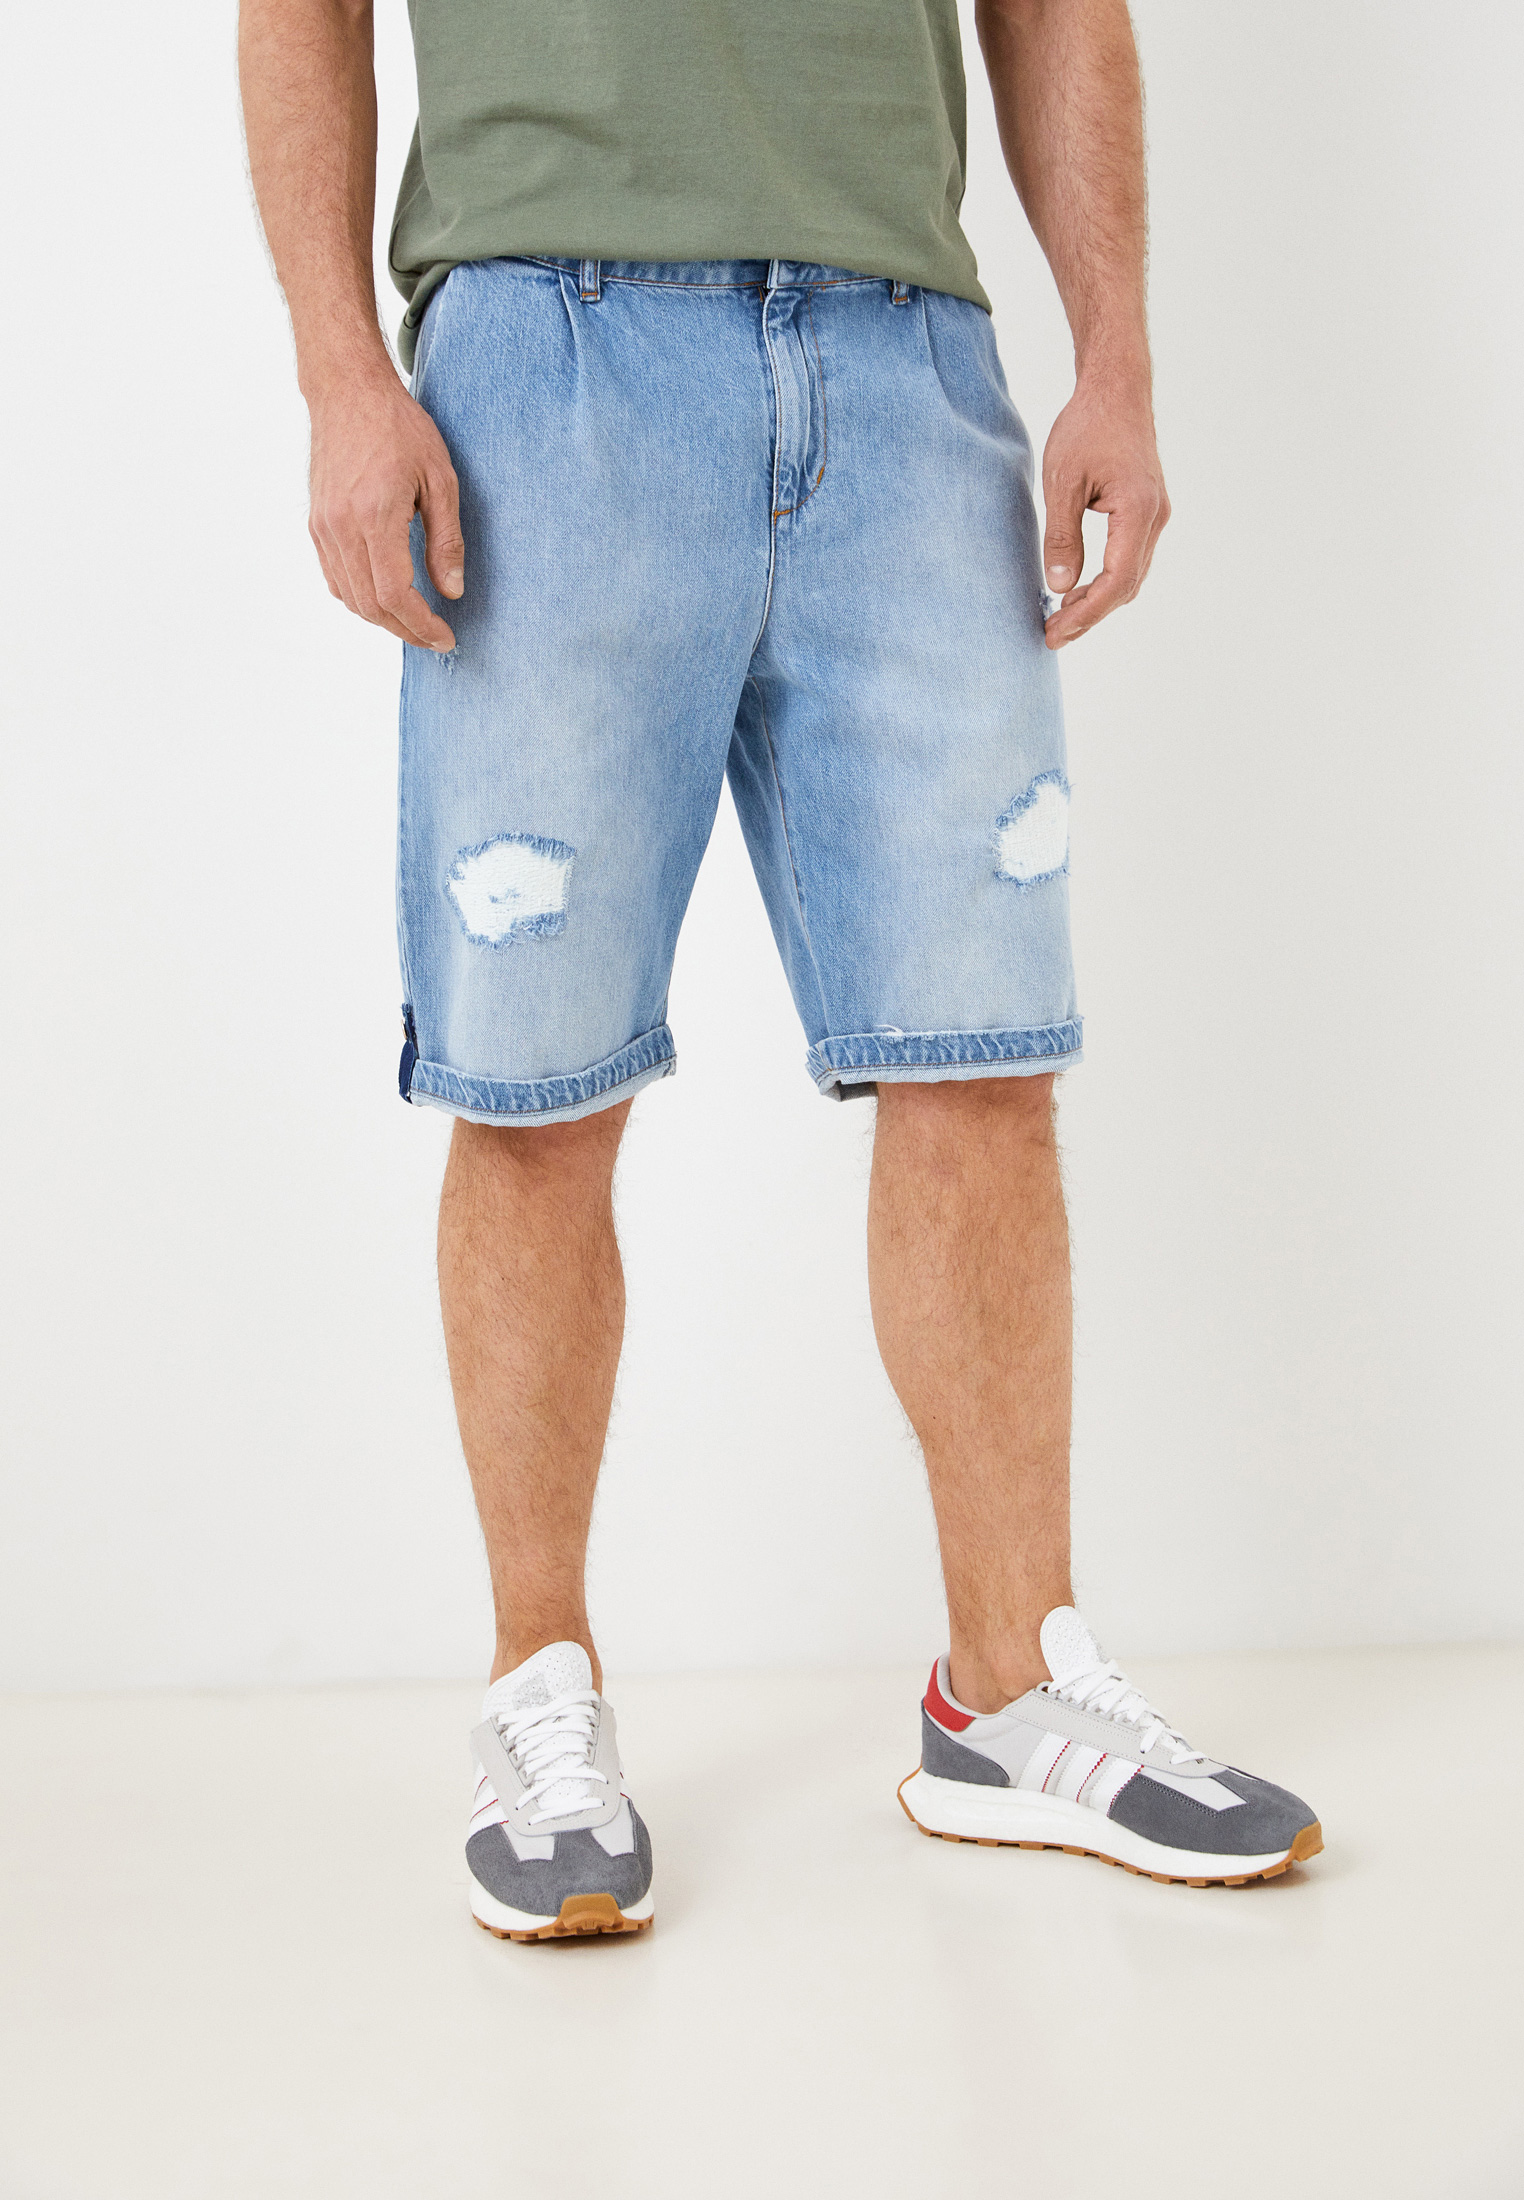 Мужские джинсовые шорты Berna M 22017330: изображение 1